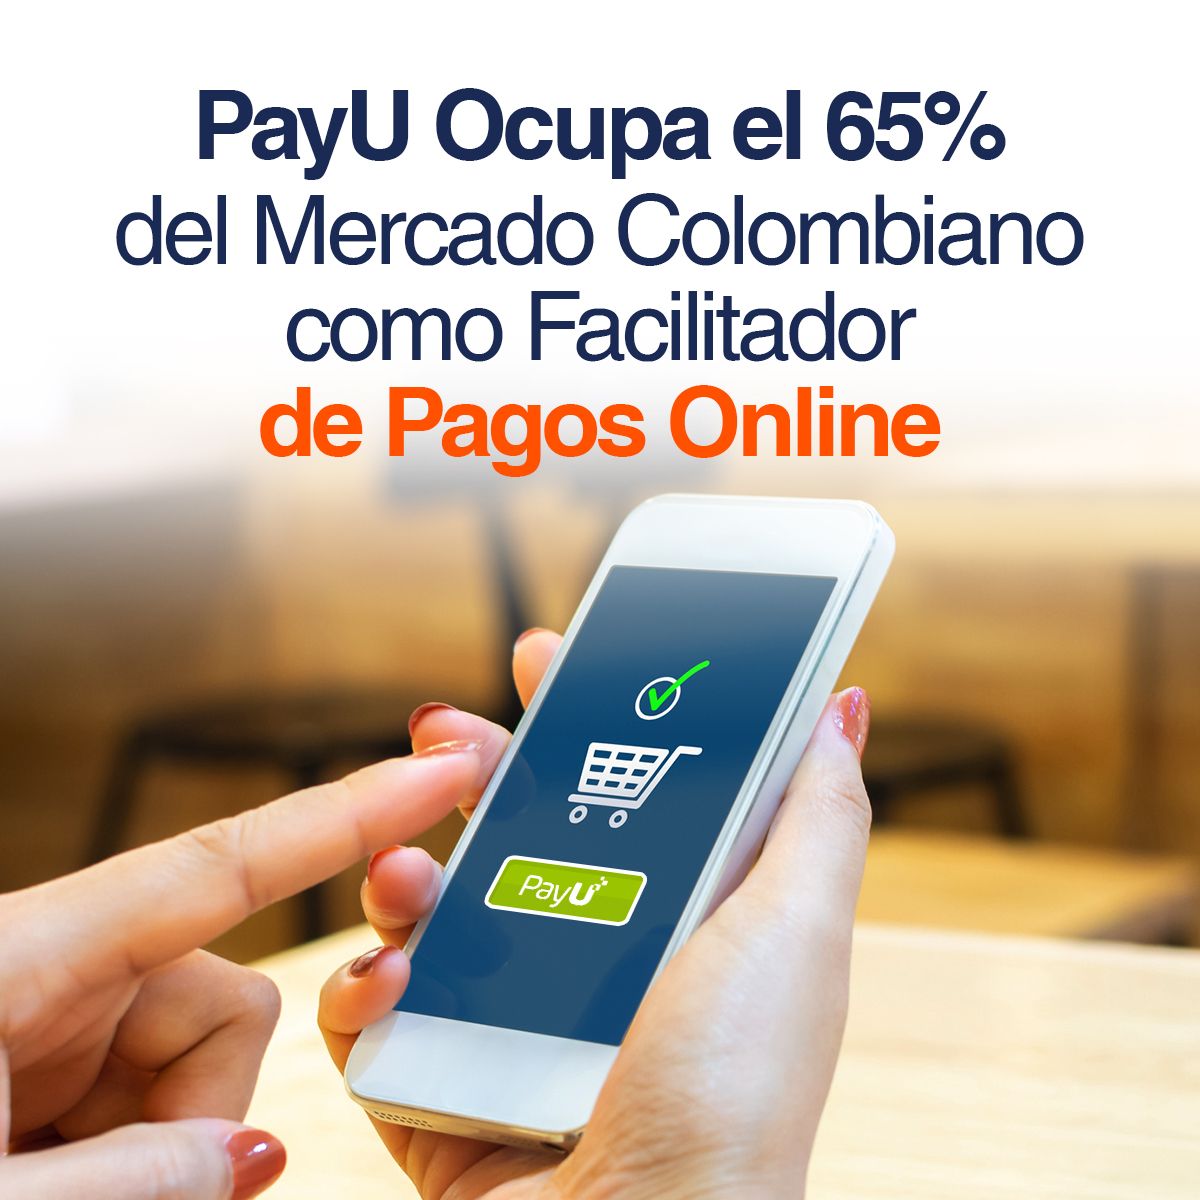 PayU Ocupa el 65% del Mercado Colombiano como Facilitador de Pagos Online